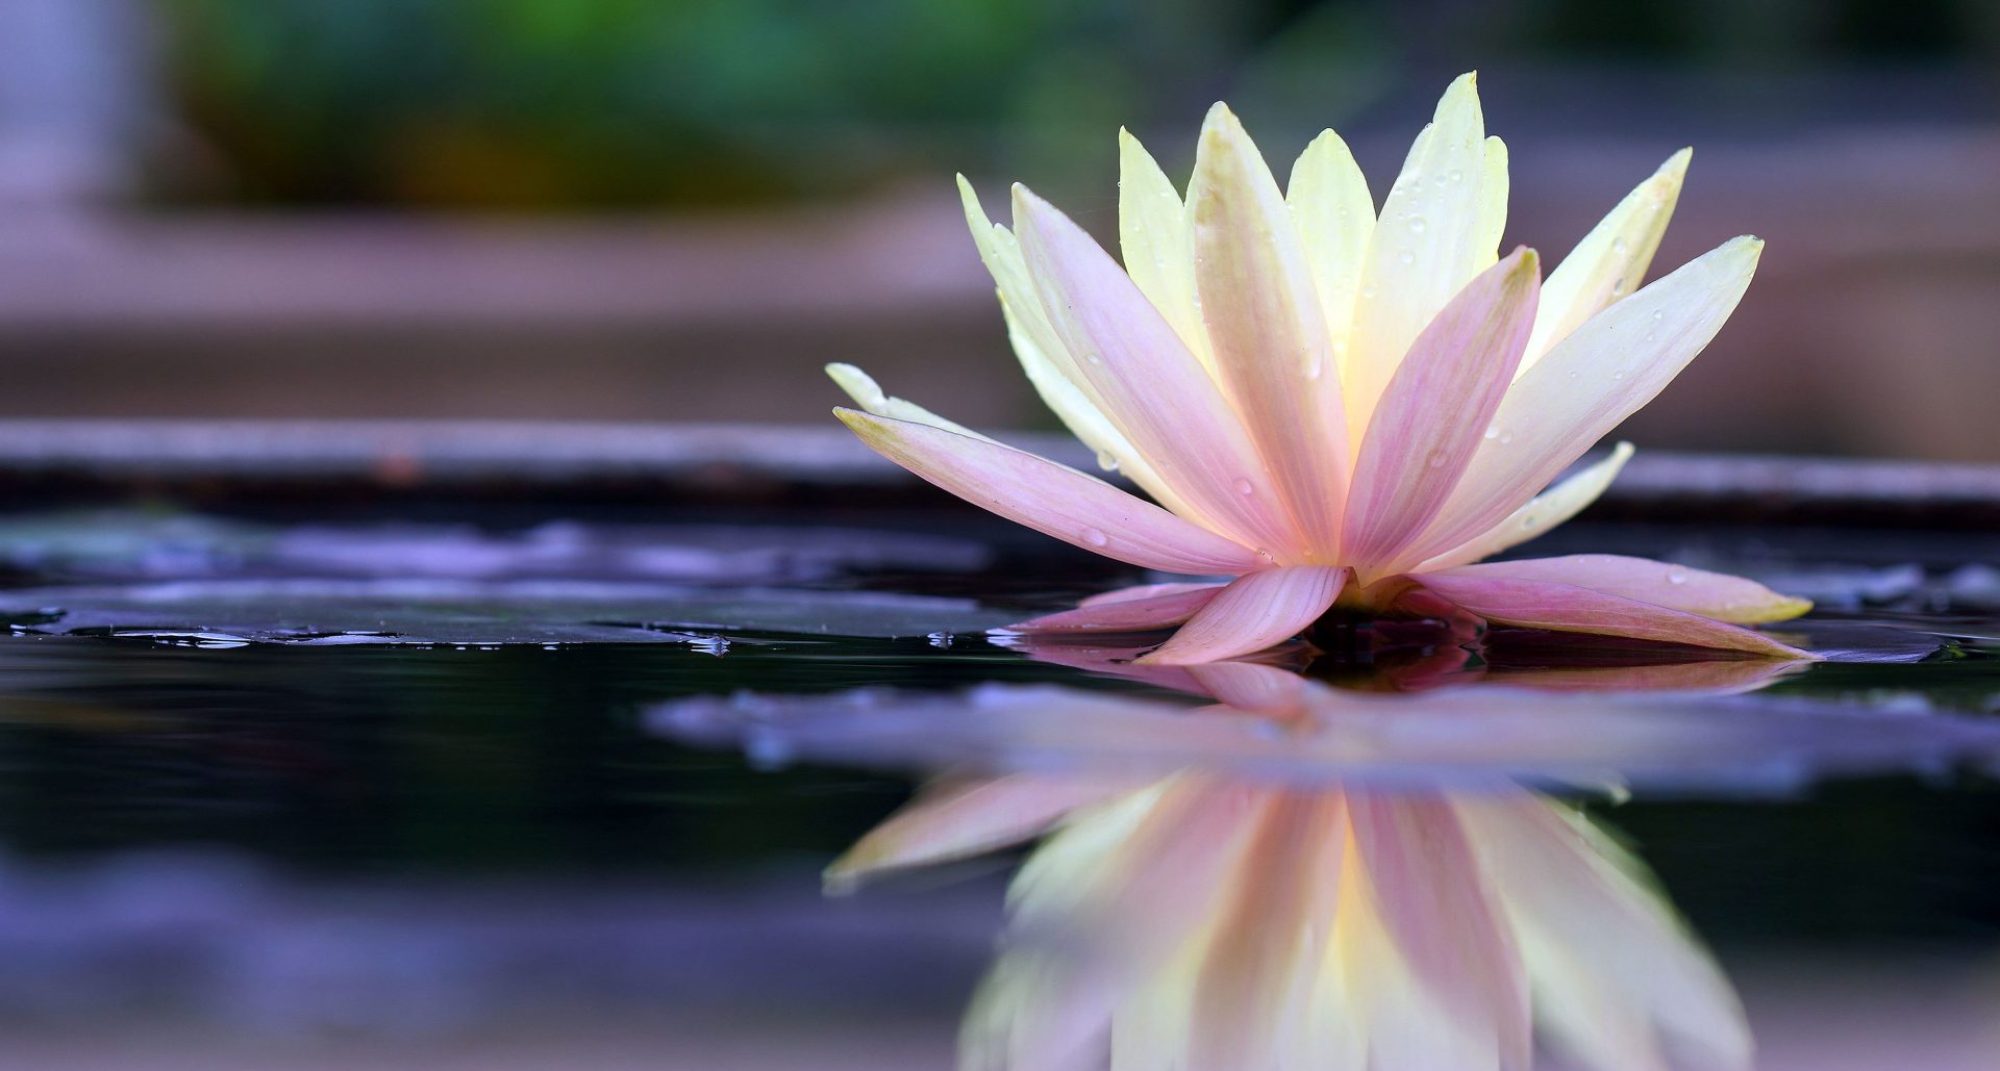 White Lotus Spiritual Healing